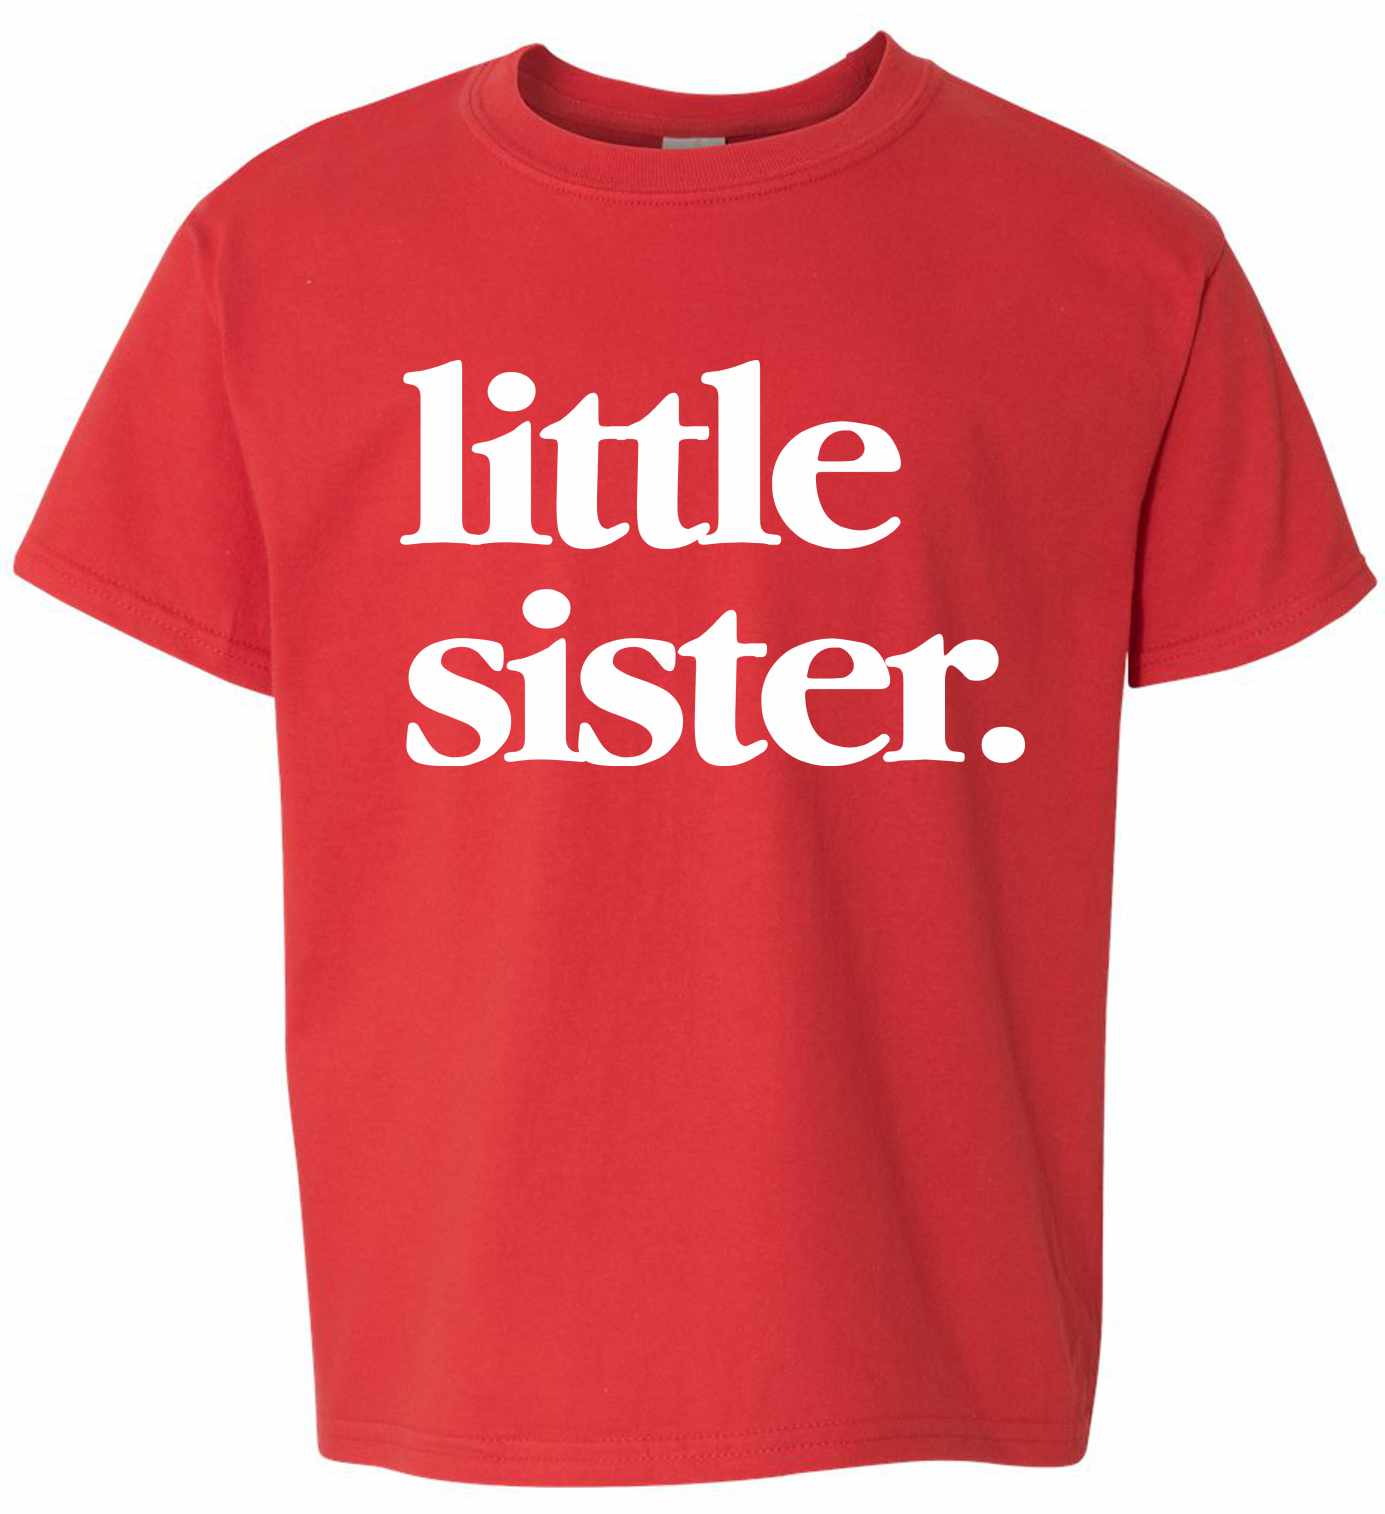 Little Sister on Kids T-Shirt (#1321-201)